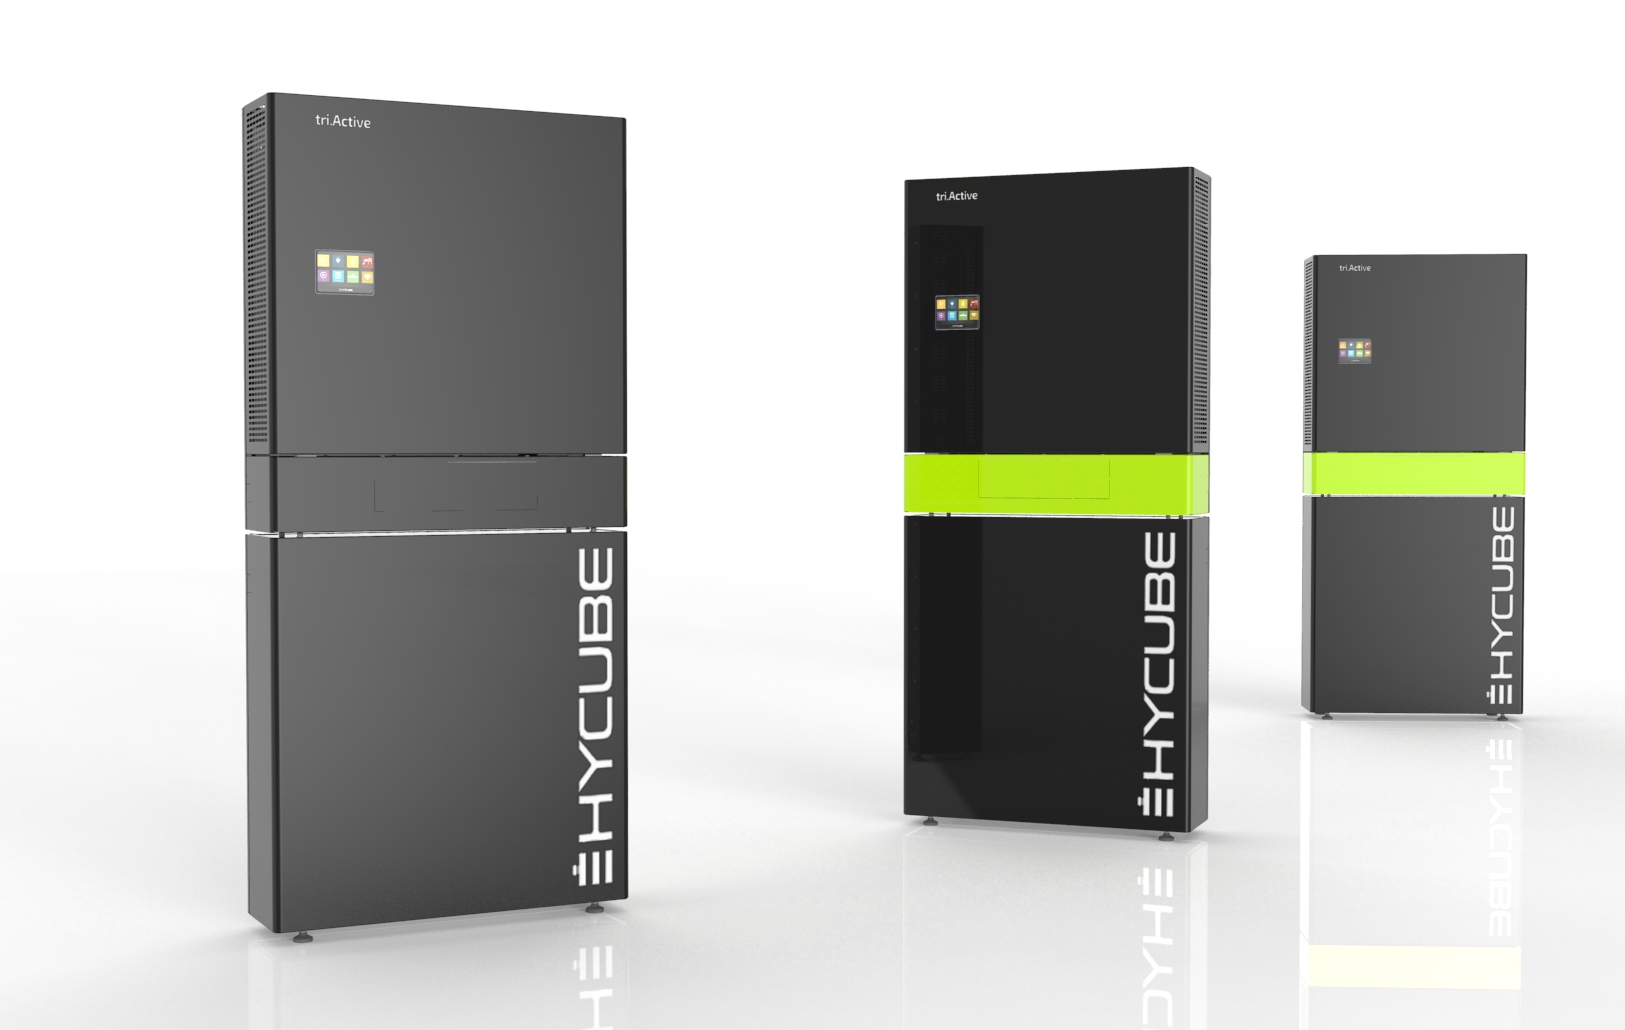 Design- und Produktentwicklung eines Stromspeichers „triActive“ für Hycube Technologies GmbH